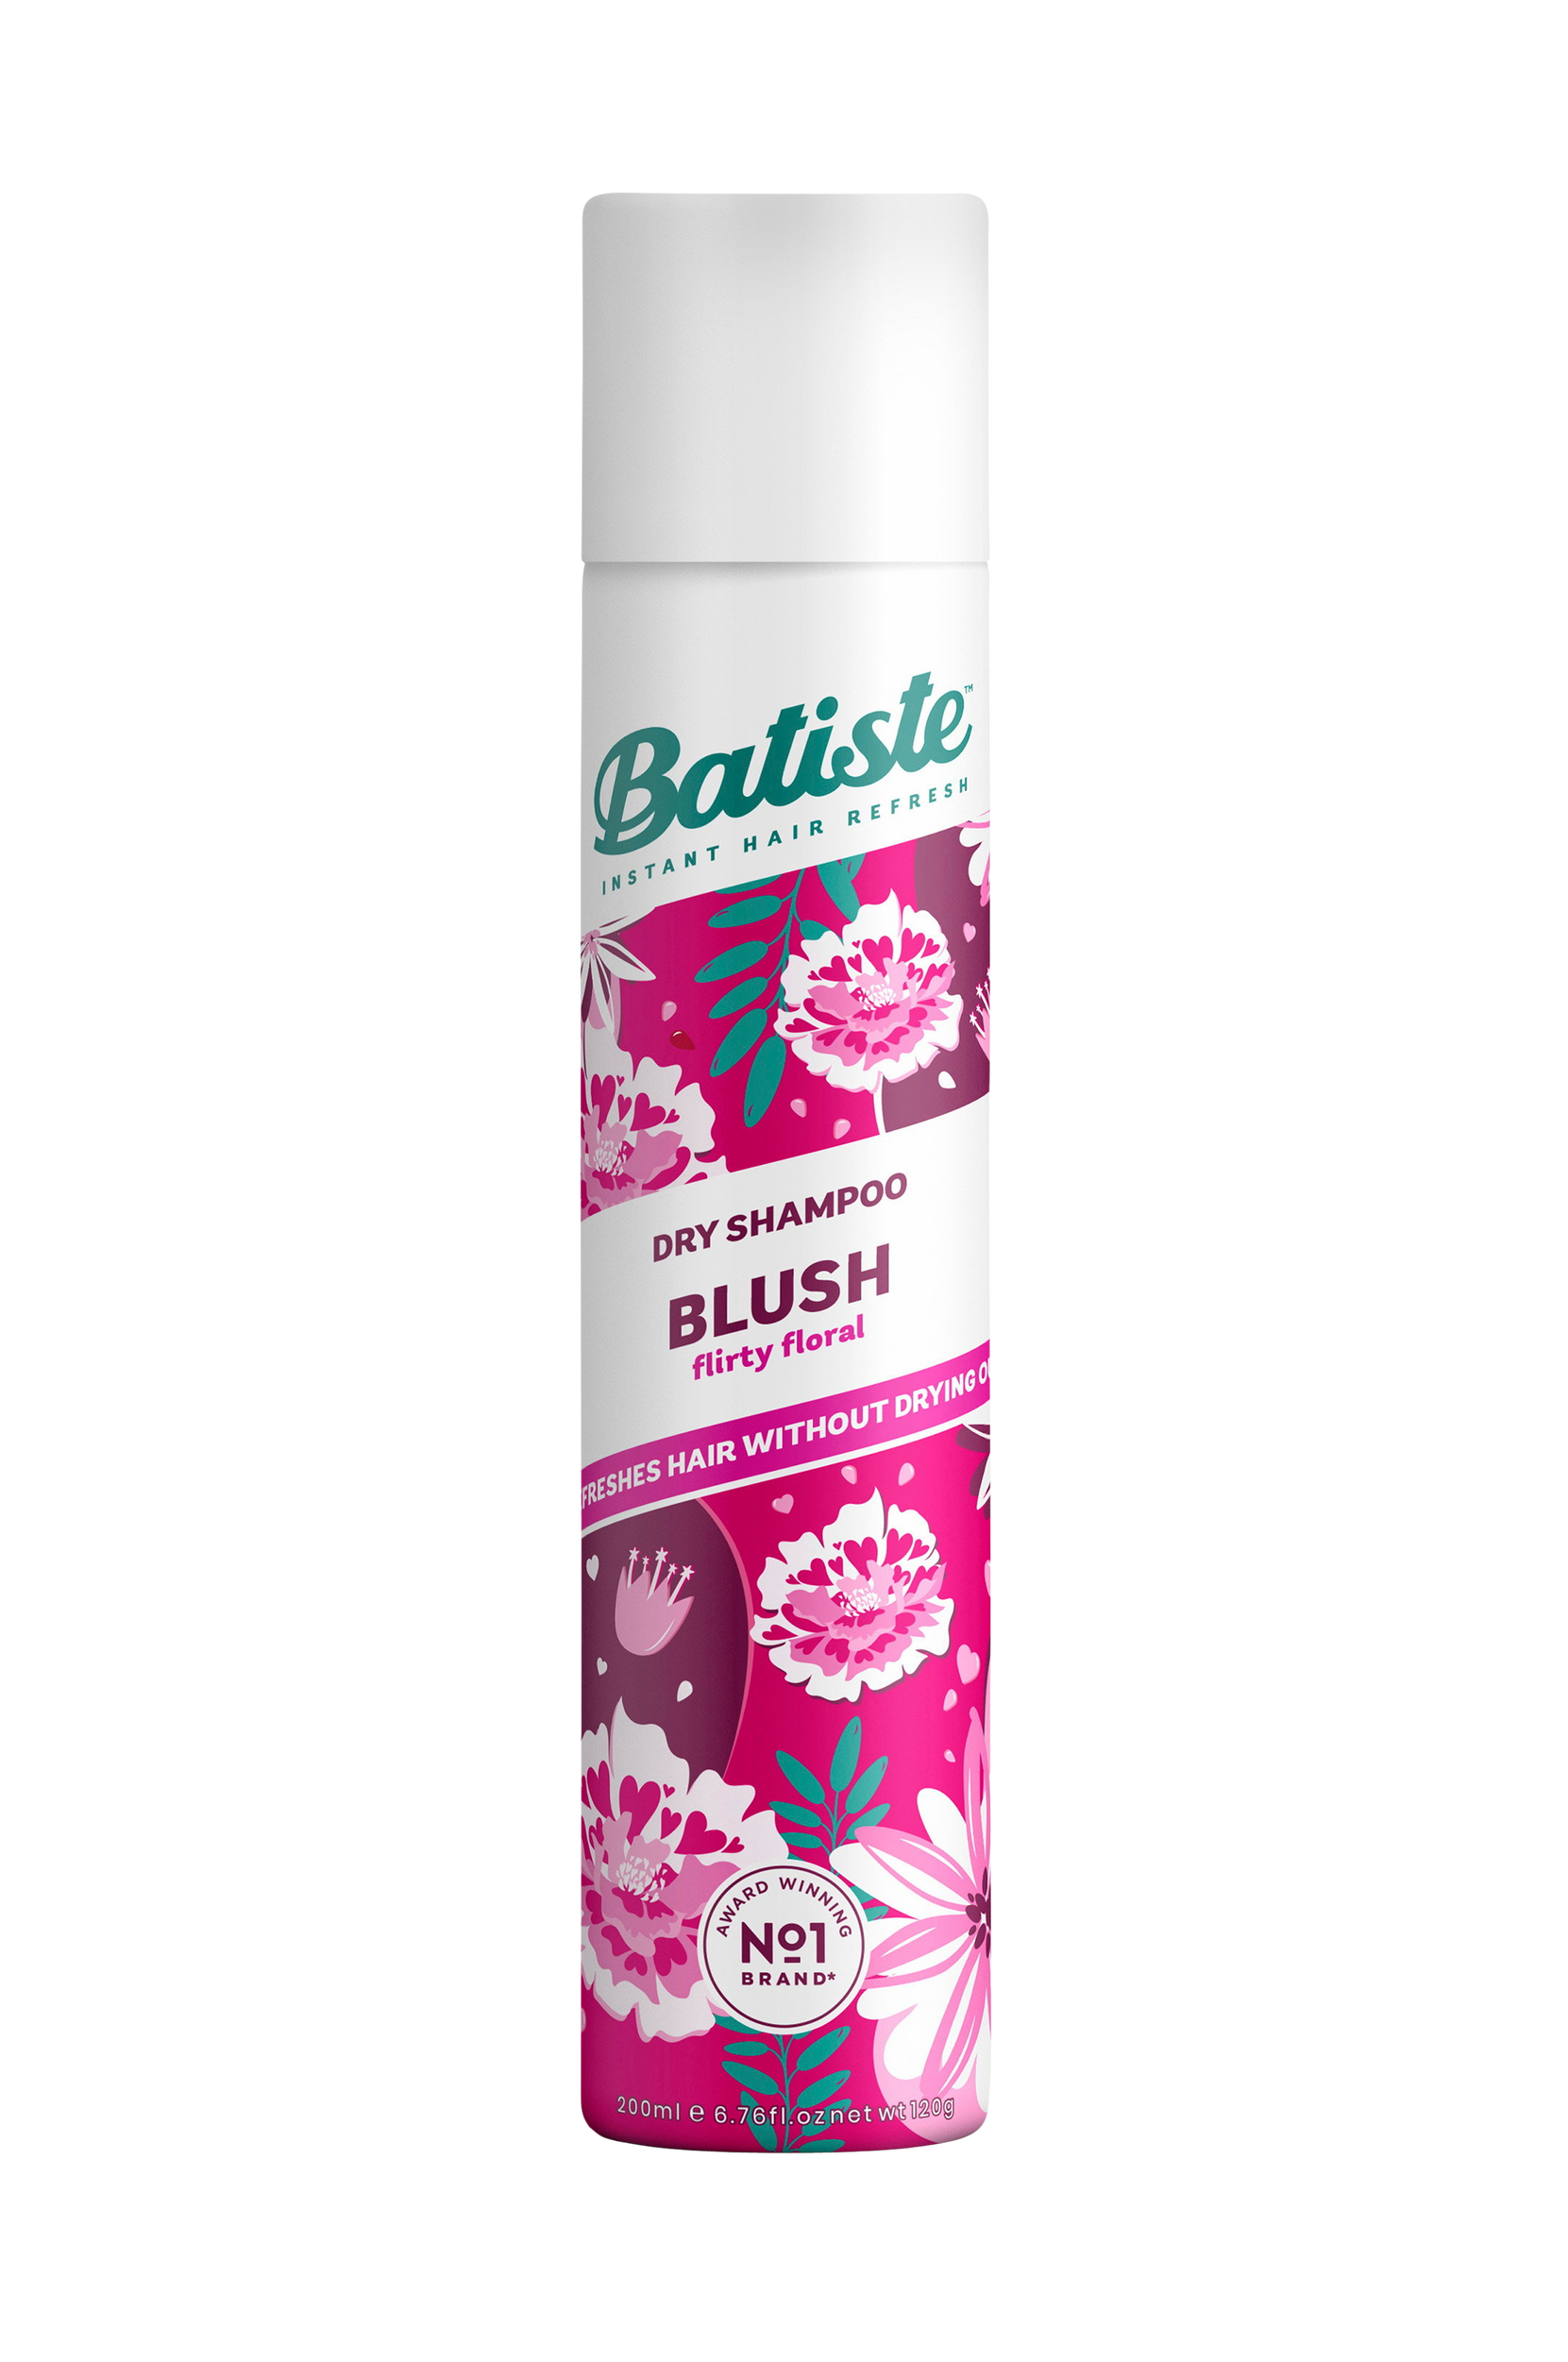 Blush Dry Shampoo 200 ml, Batiste